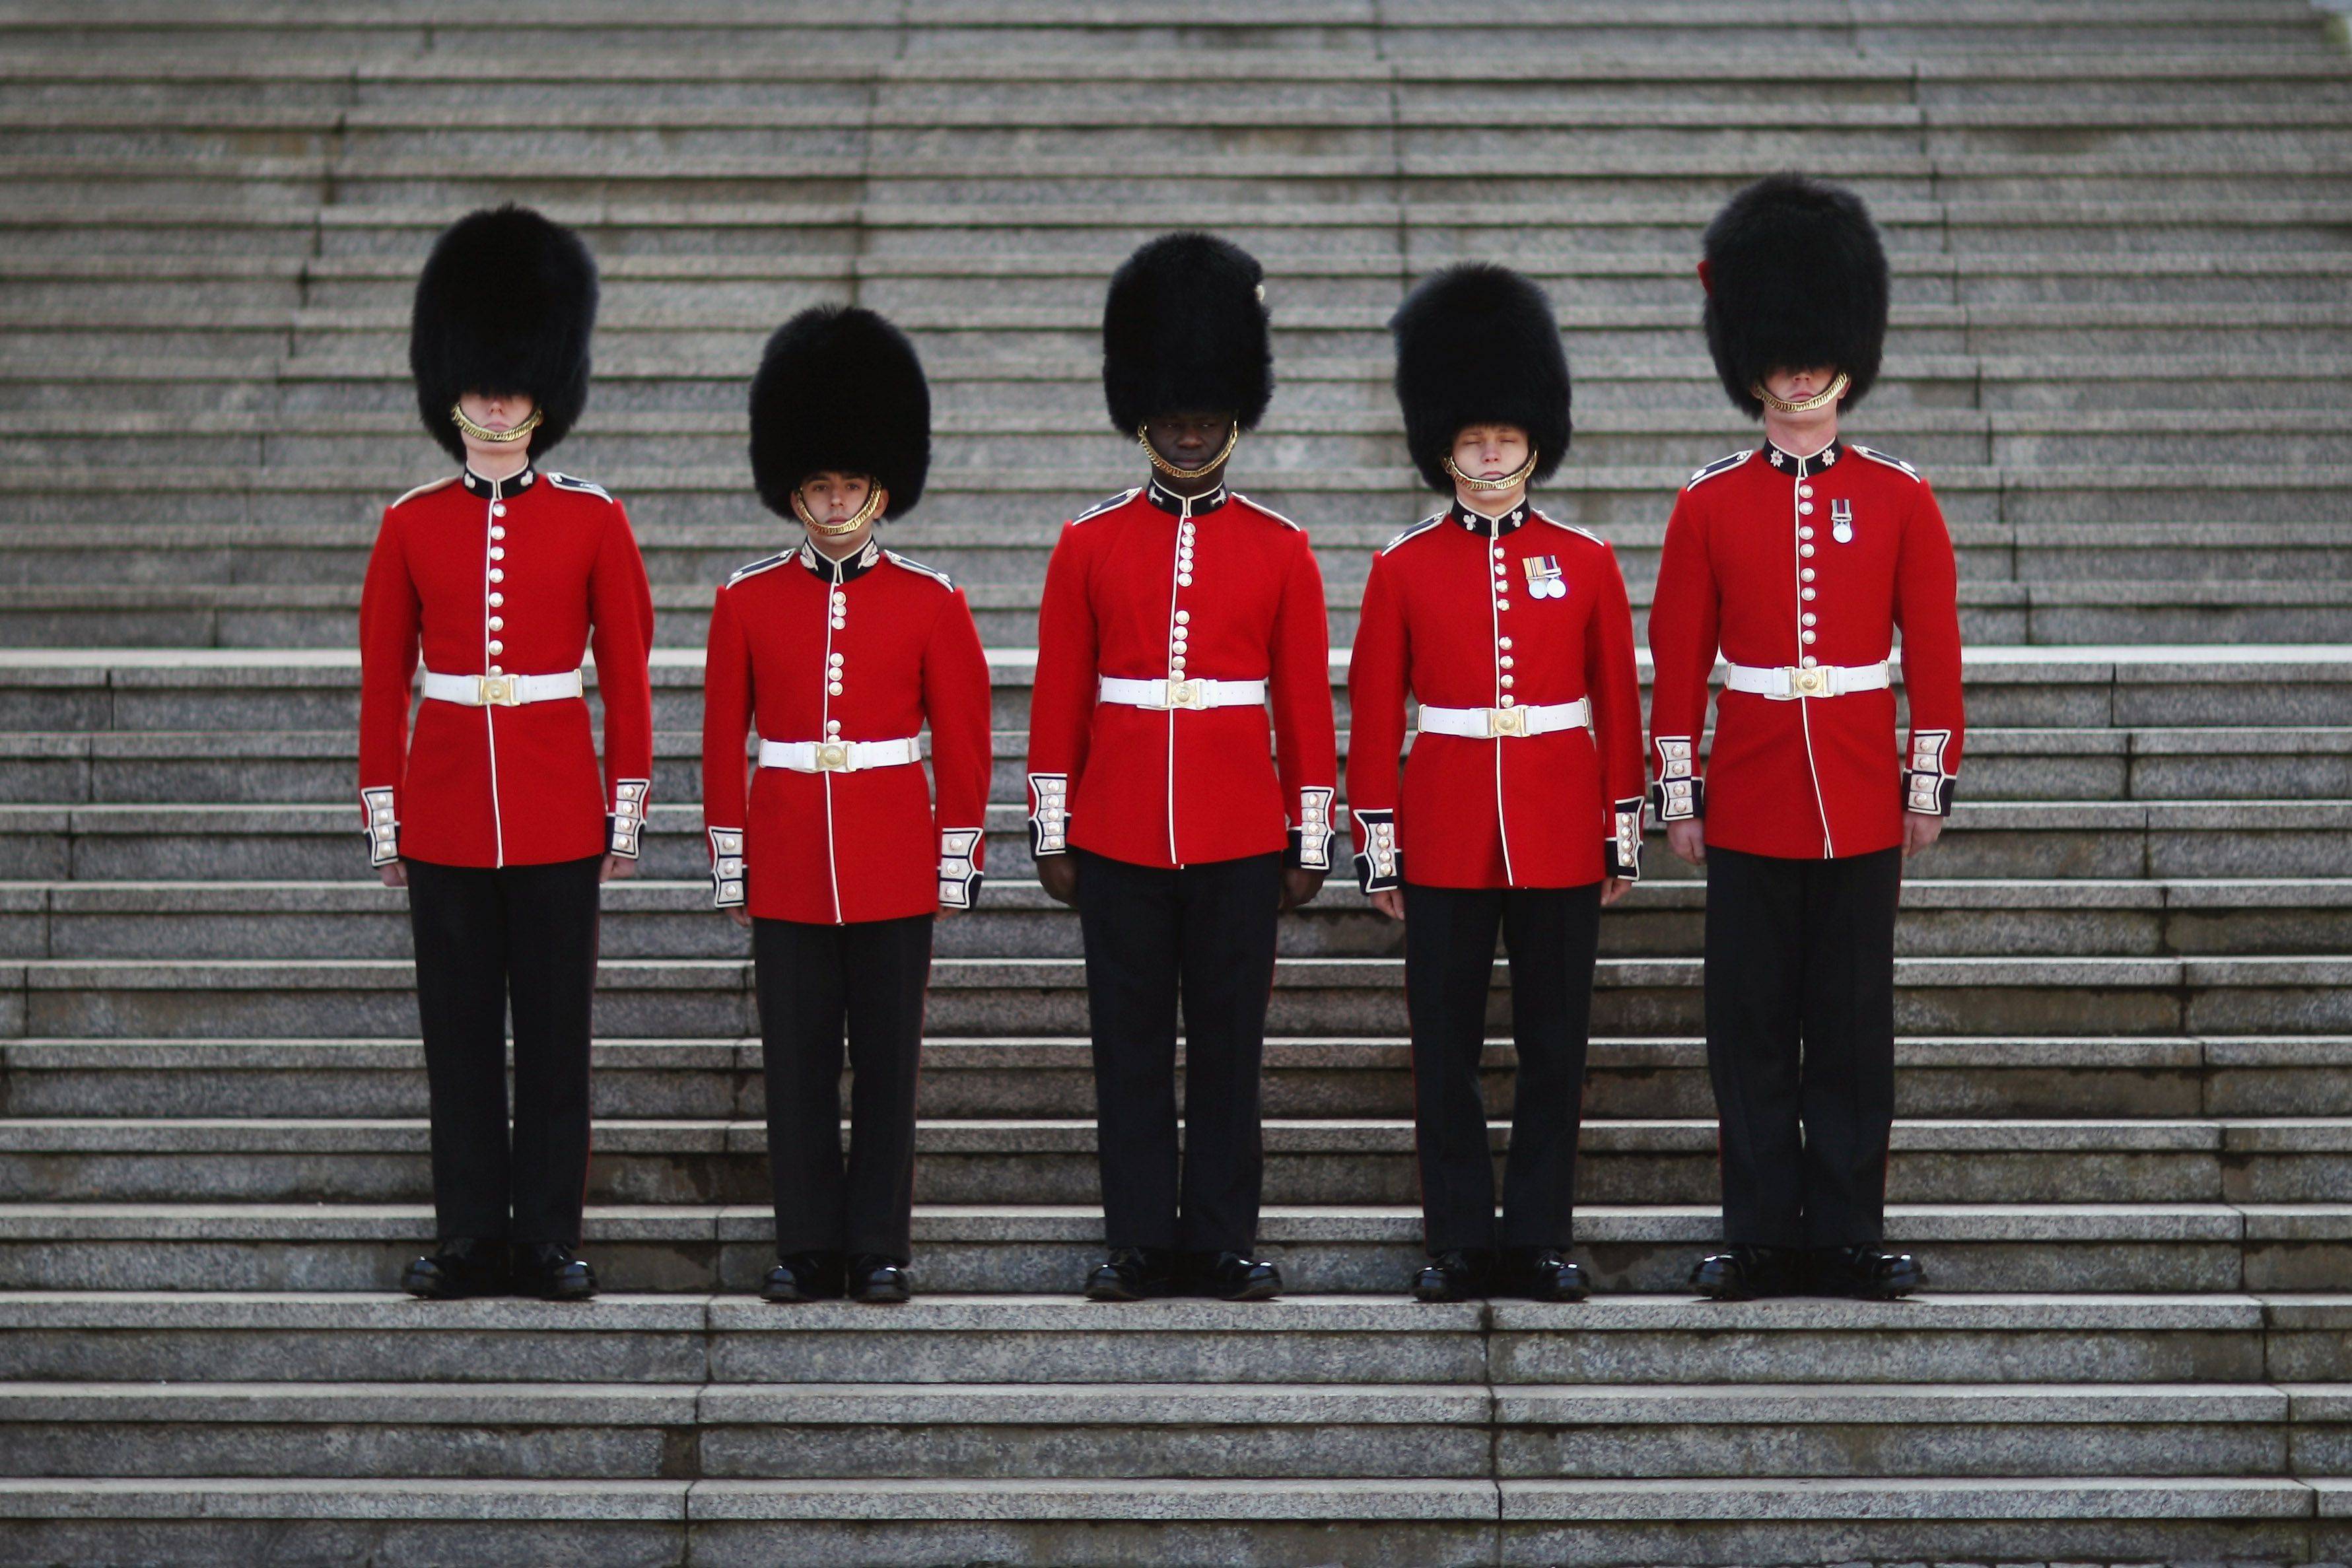 英国皇家卫队7个团,红色制服再热也不能脱,人造熊皮帽